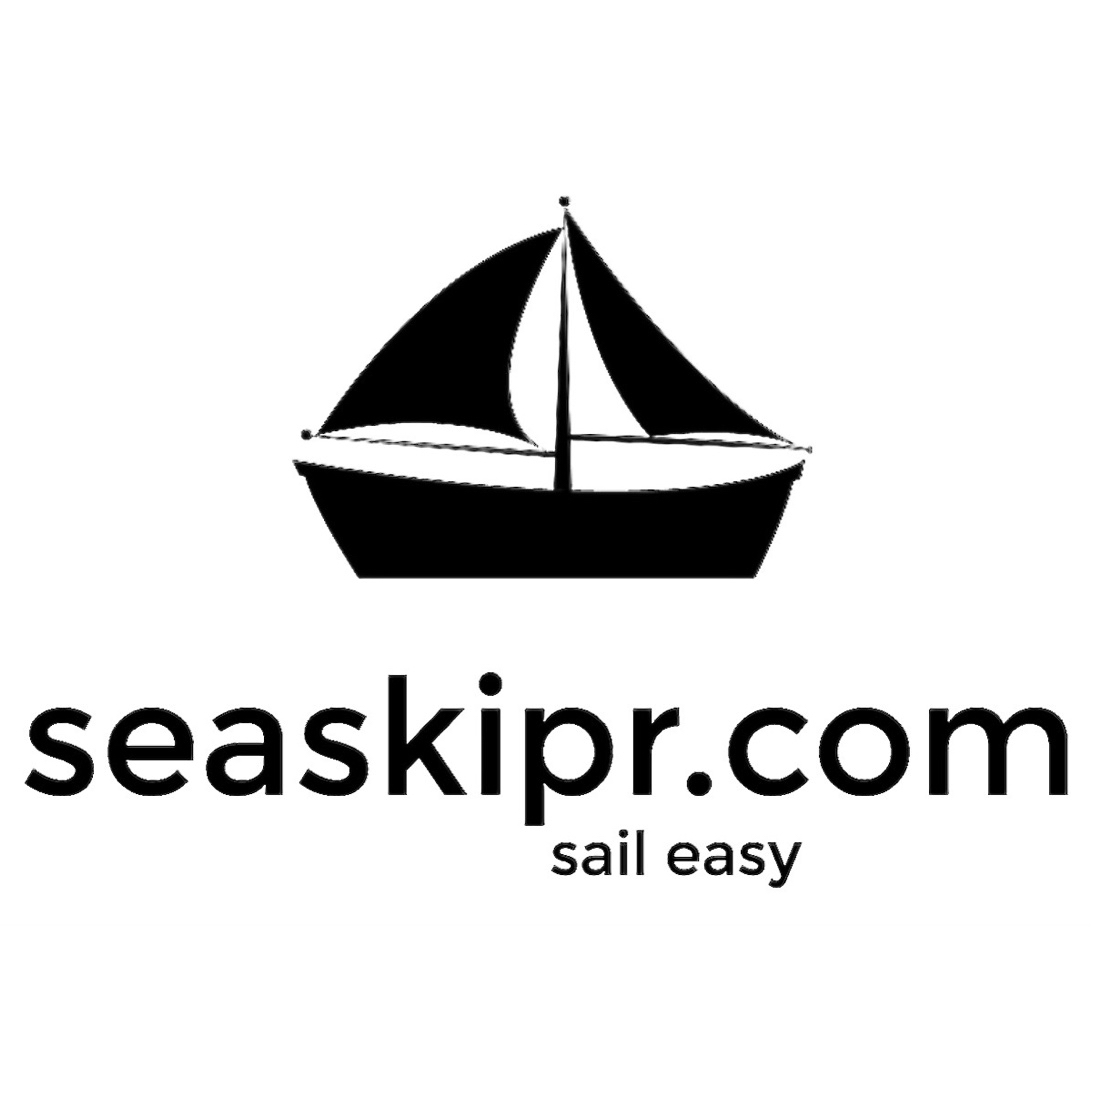 seaskipr.com